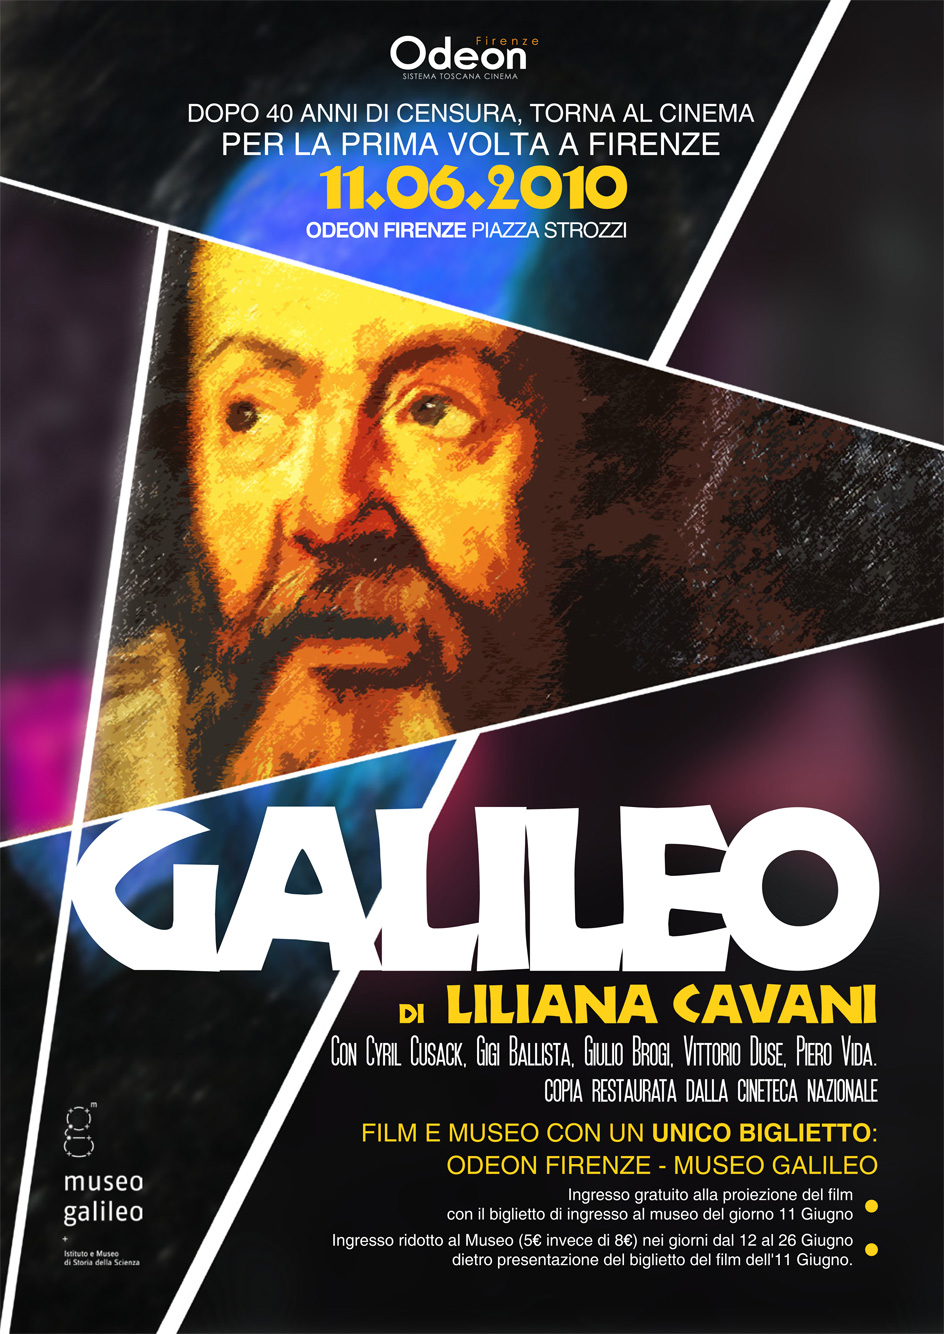 Galileo by Liliana Cavani